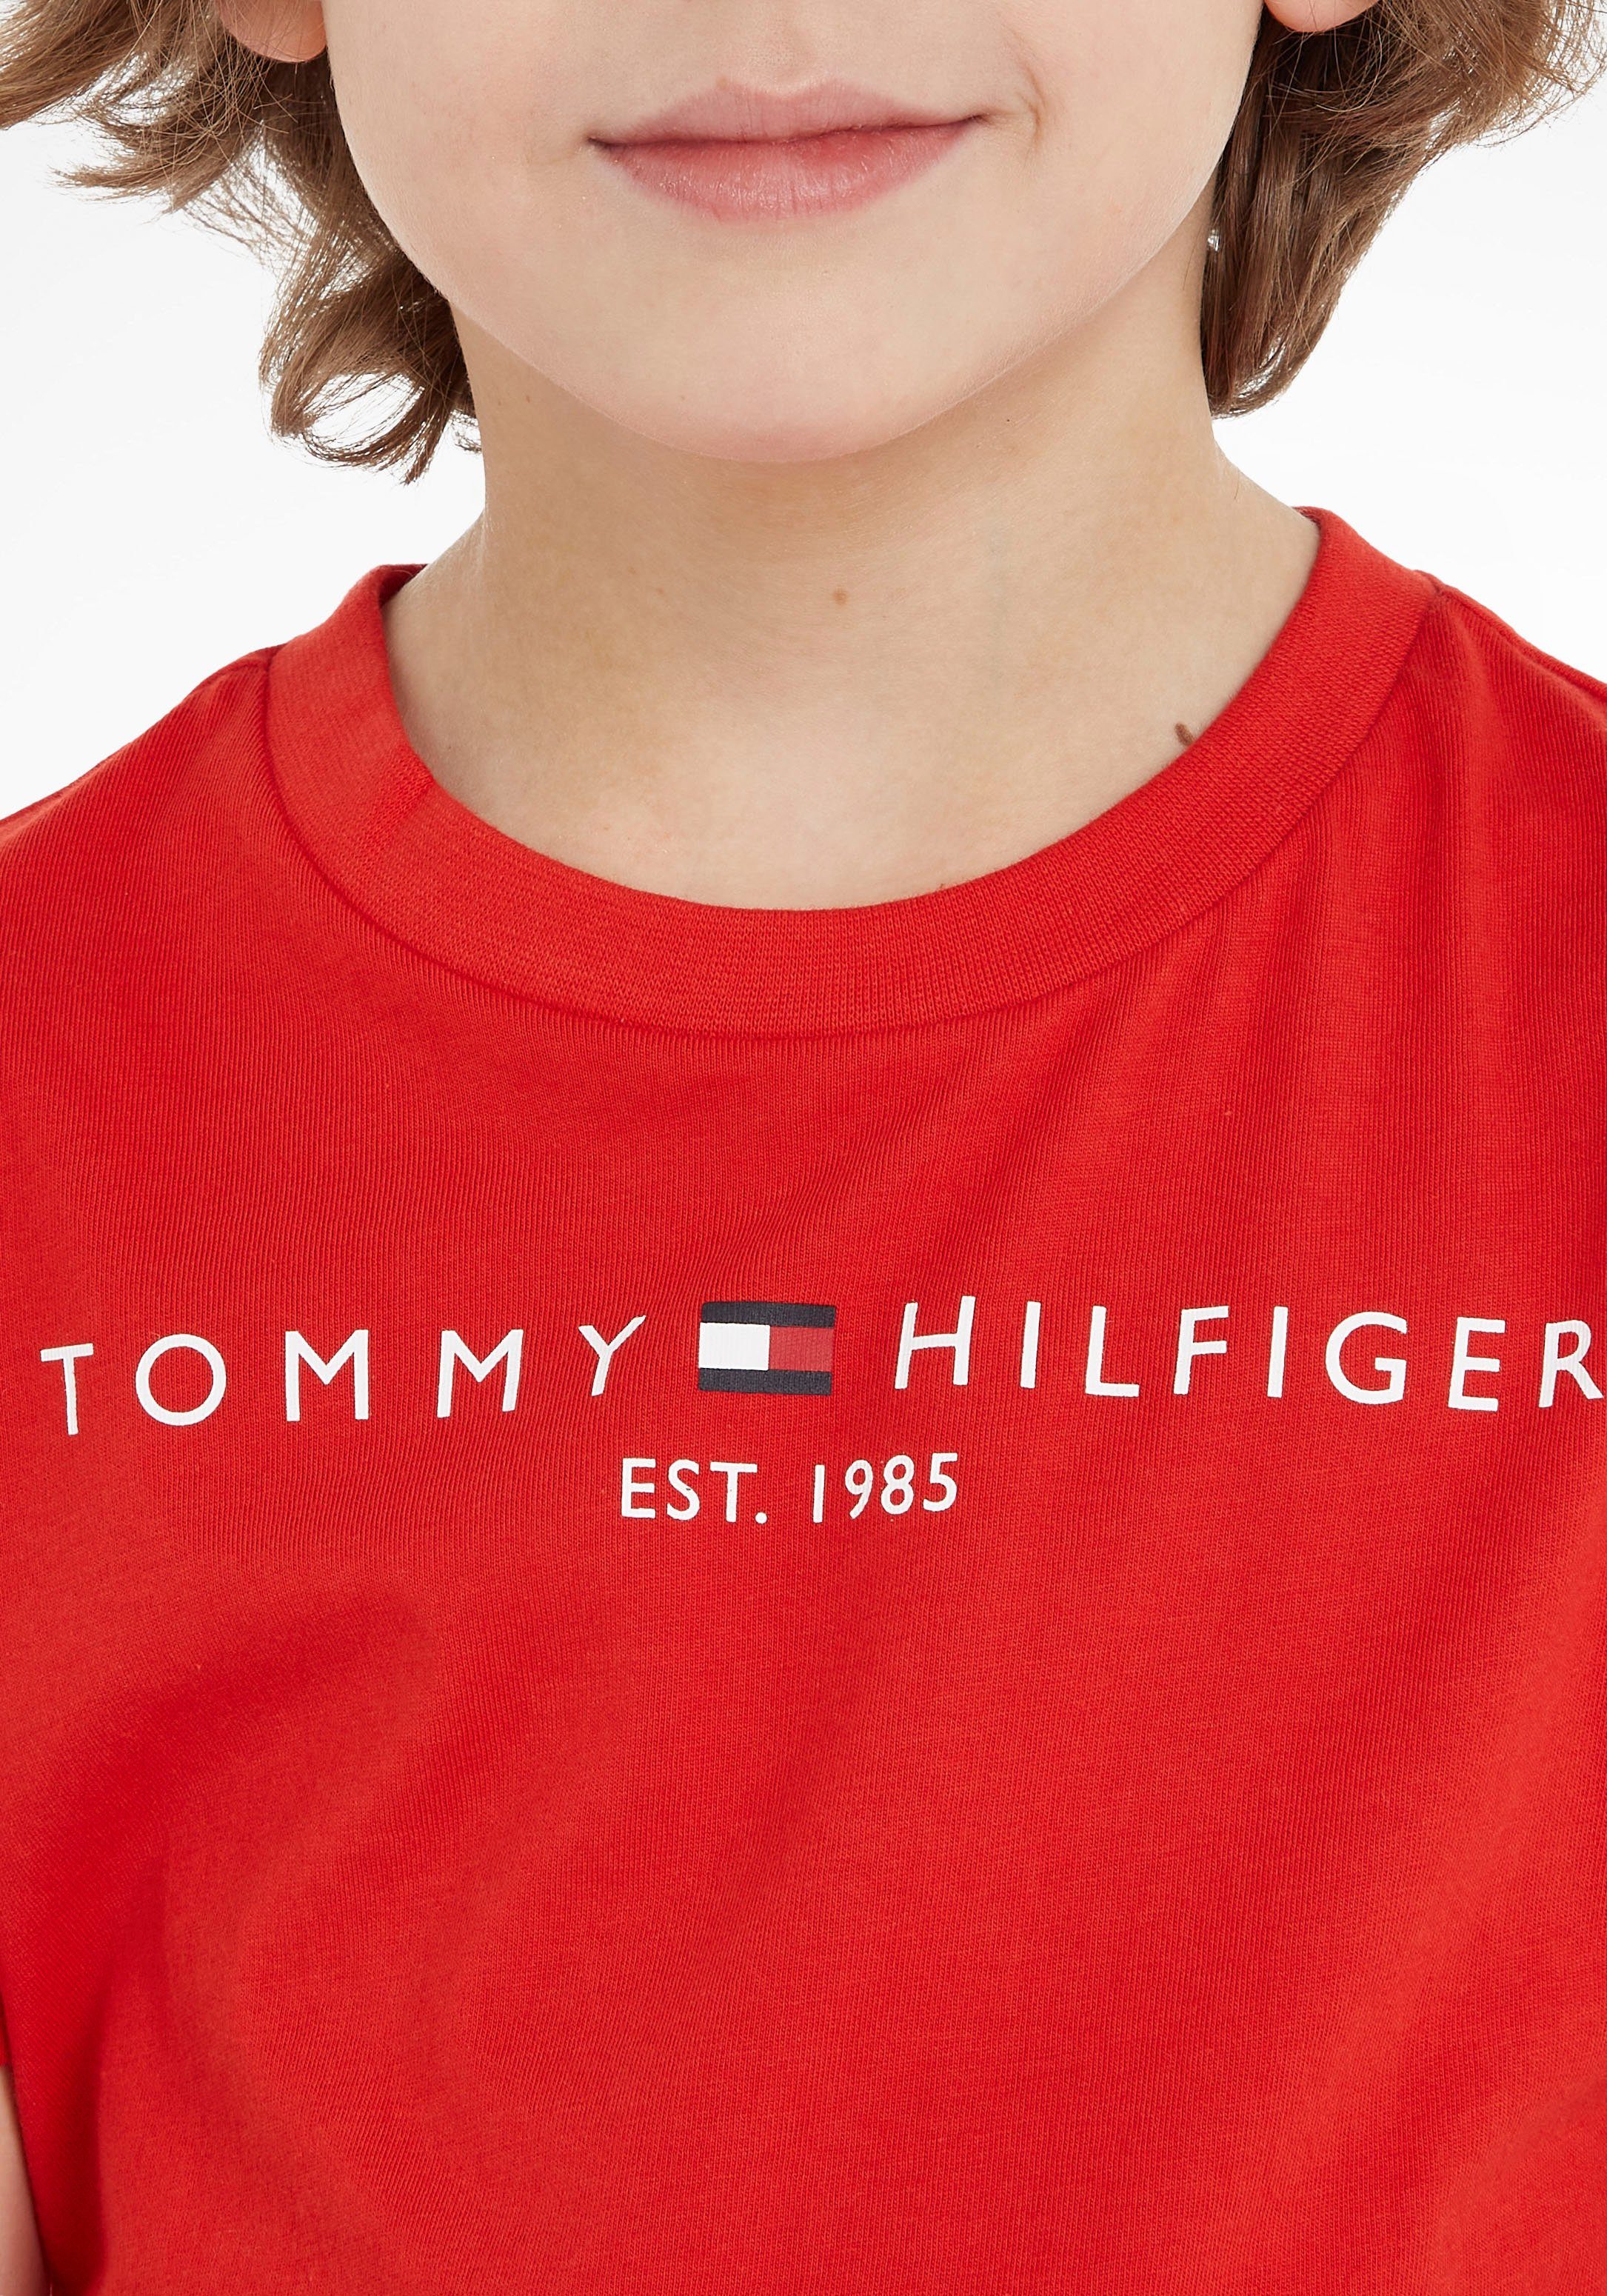 Tommy Hilfiger T-Shirt ESSENTIAL TEE Kinder und Jungen Junior Kids MiniMe,für Mädchen